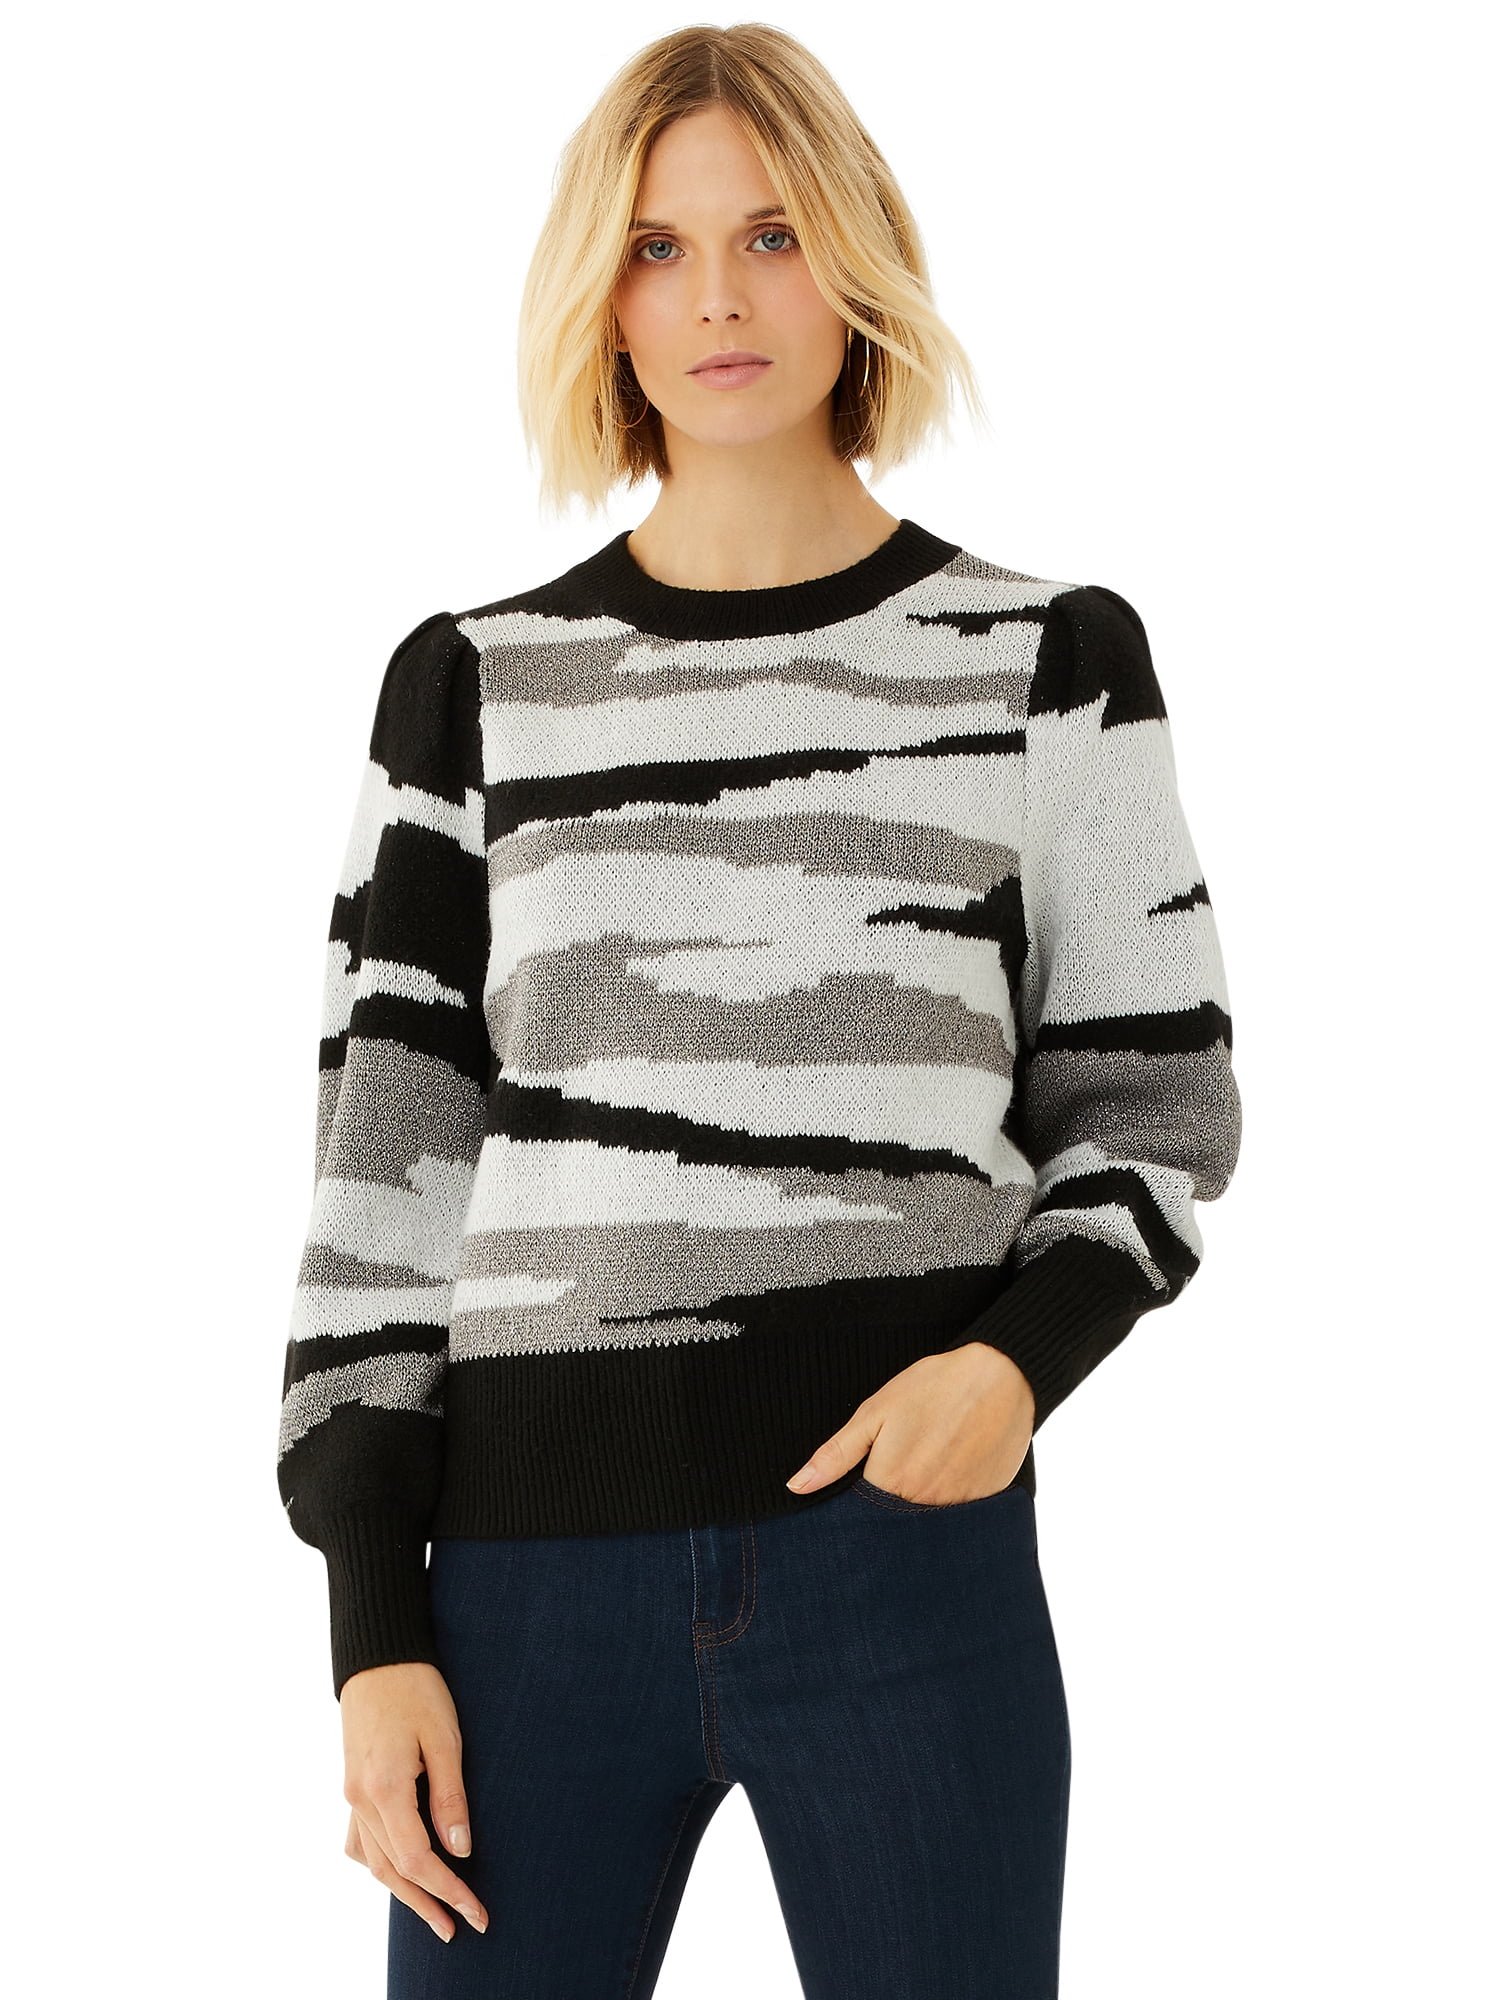 Scoop Women's Crewneck Camo Sweater - Walmart.com